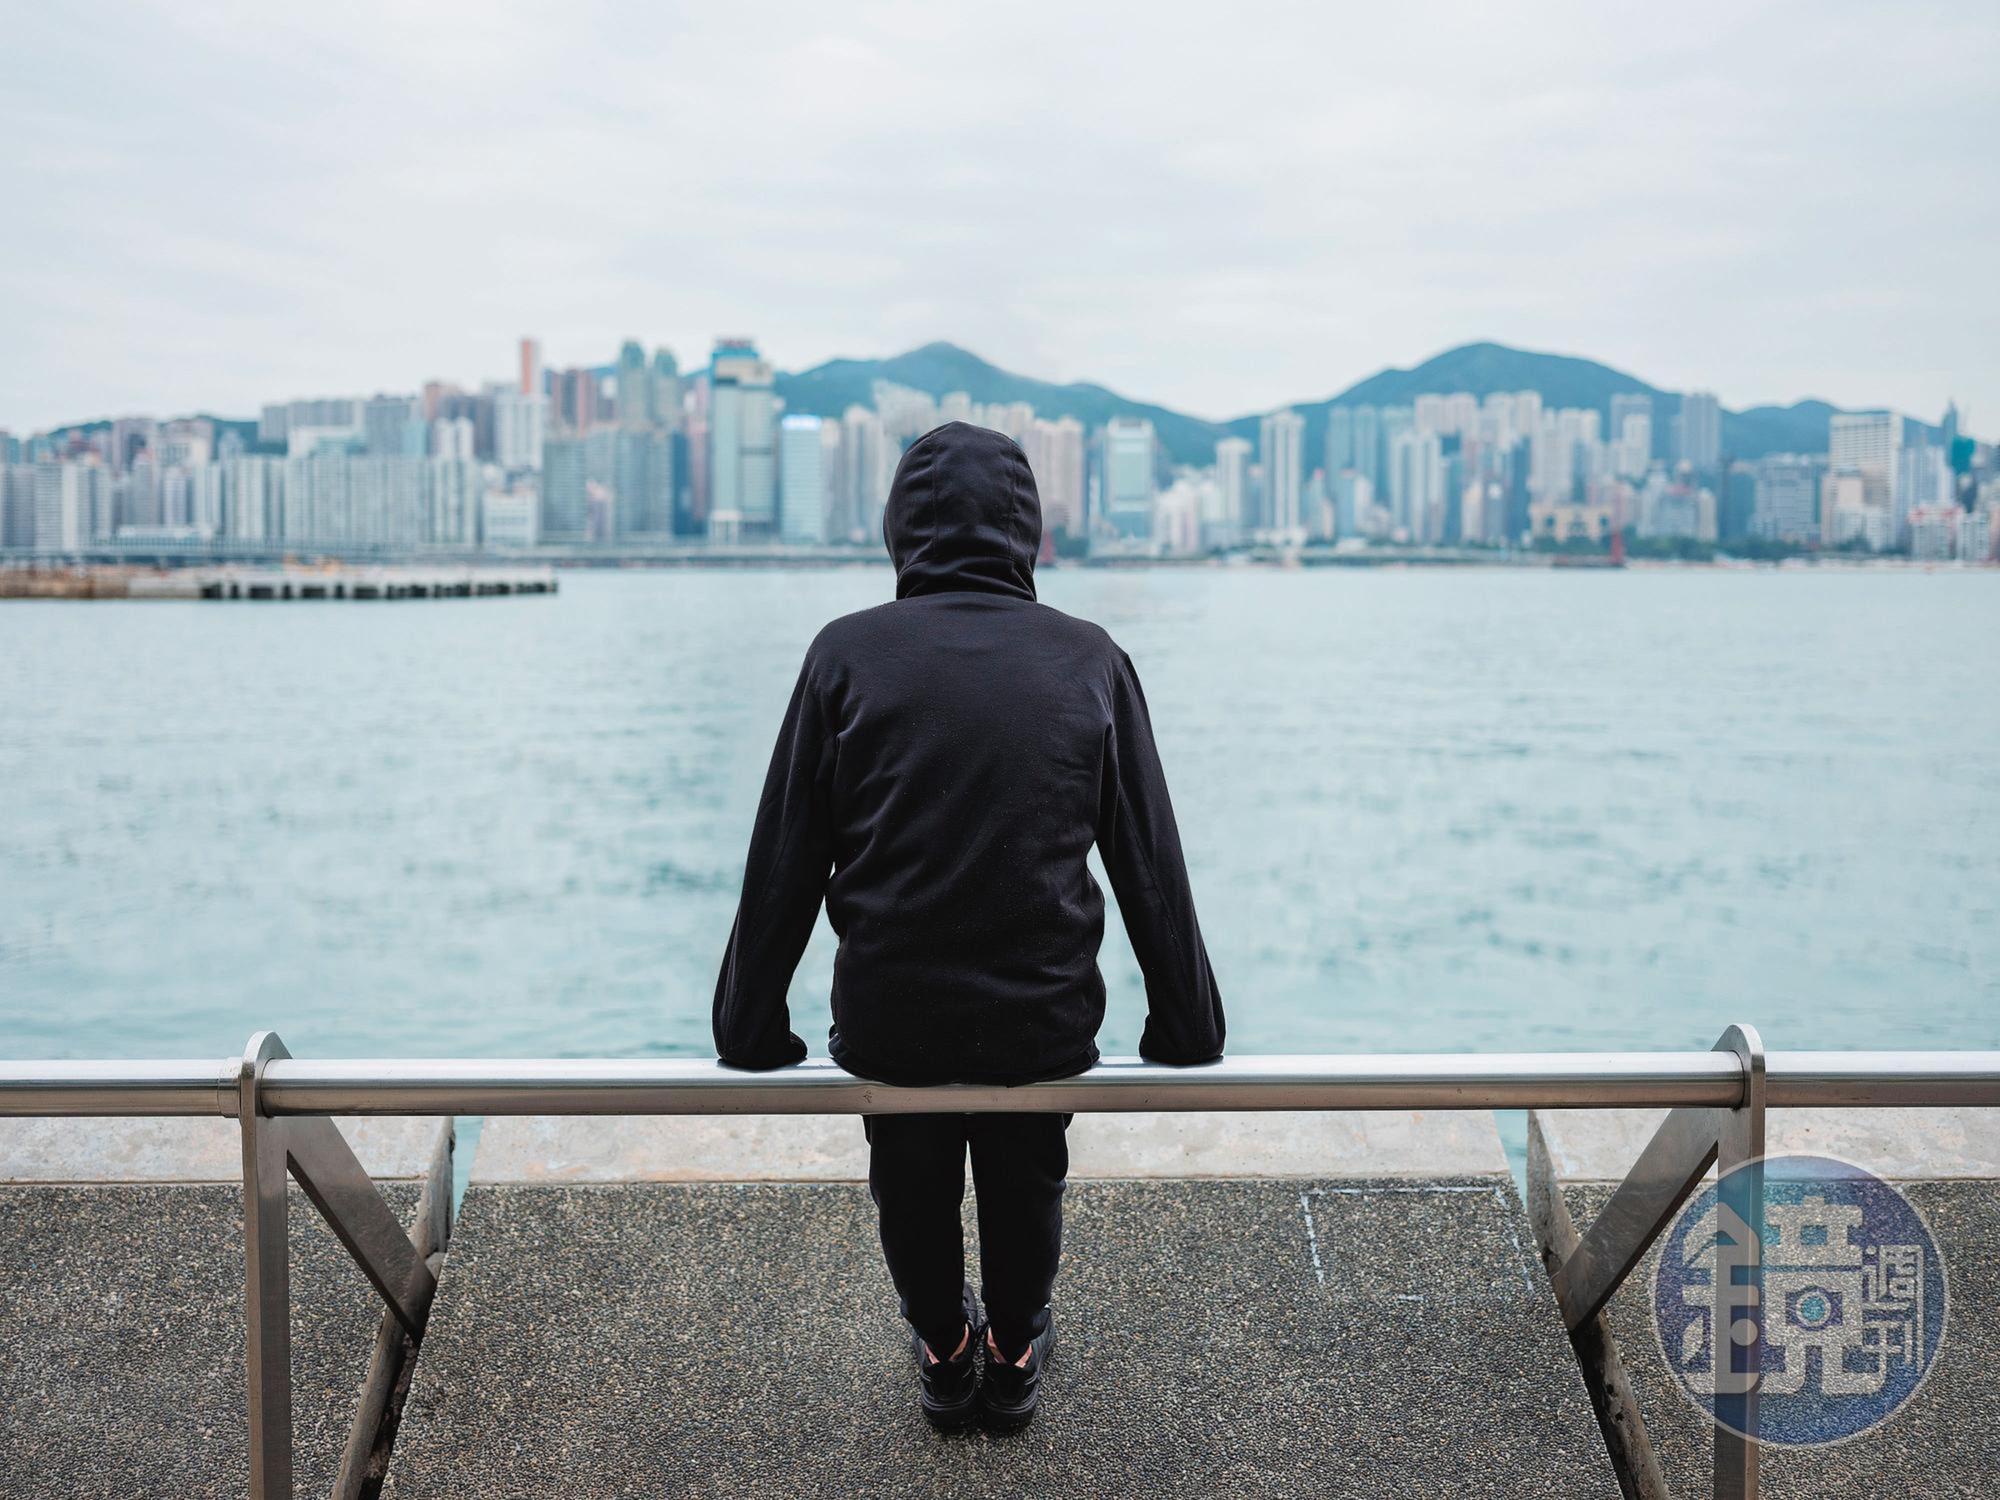 【鏡相人間 EP41】國安法下的香港人後來怎麼了？2019年度風雲人物追蹤報導幕後